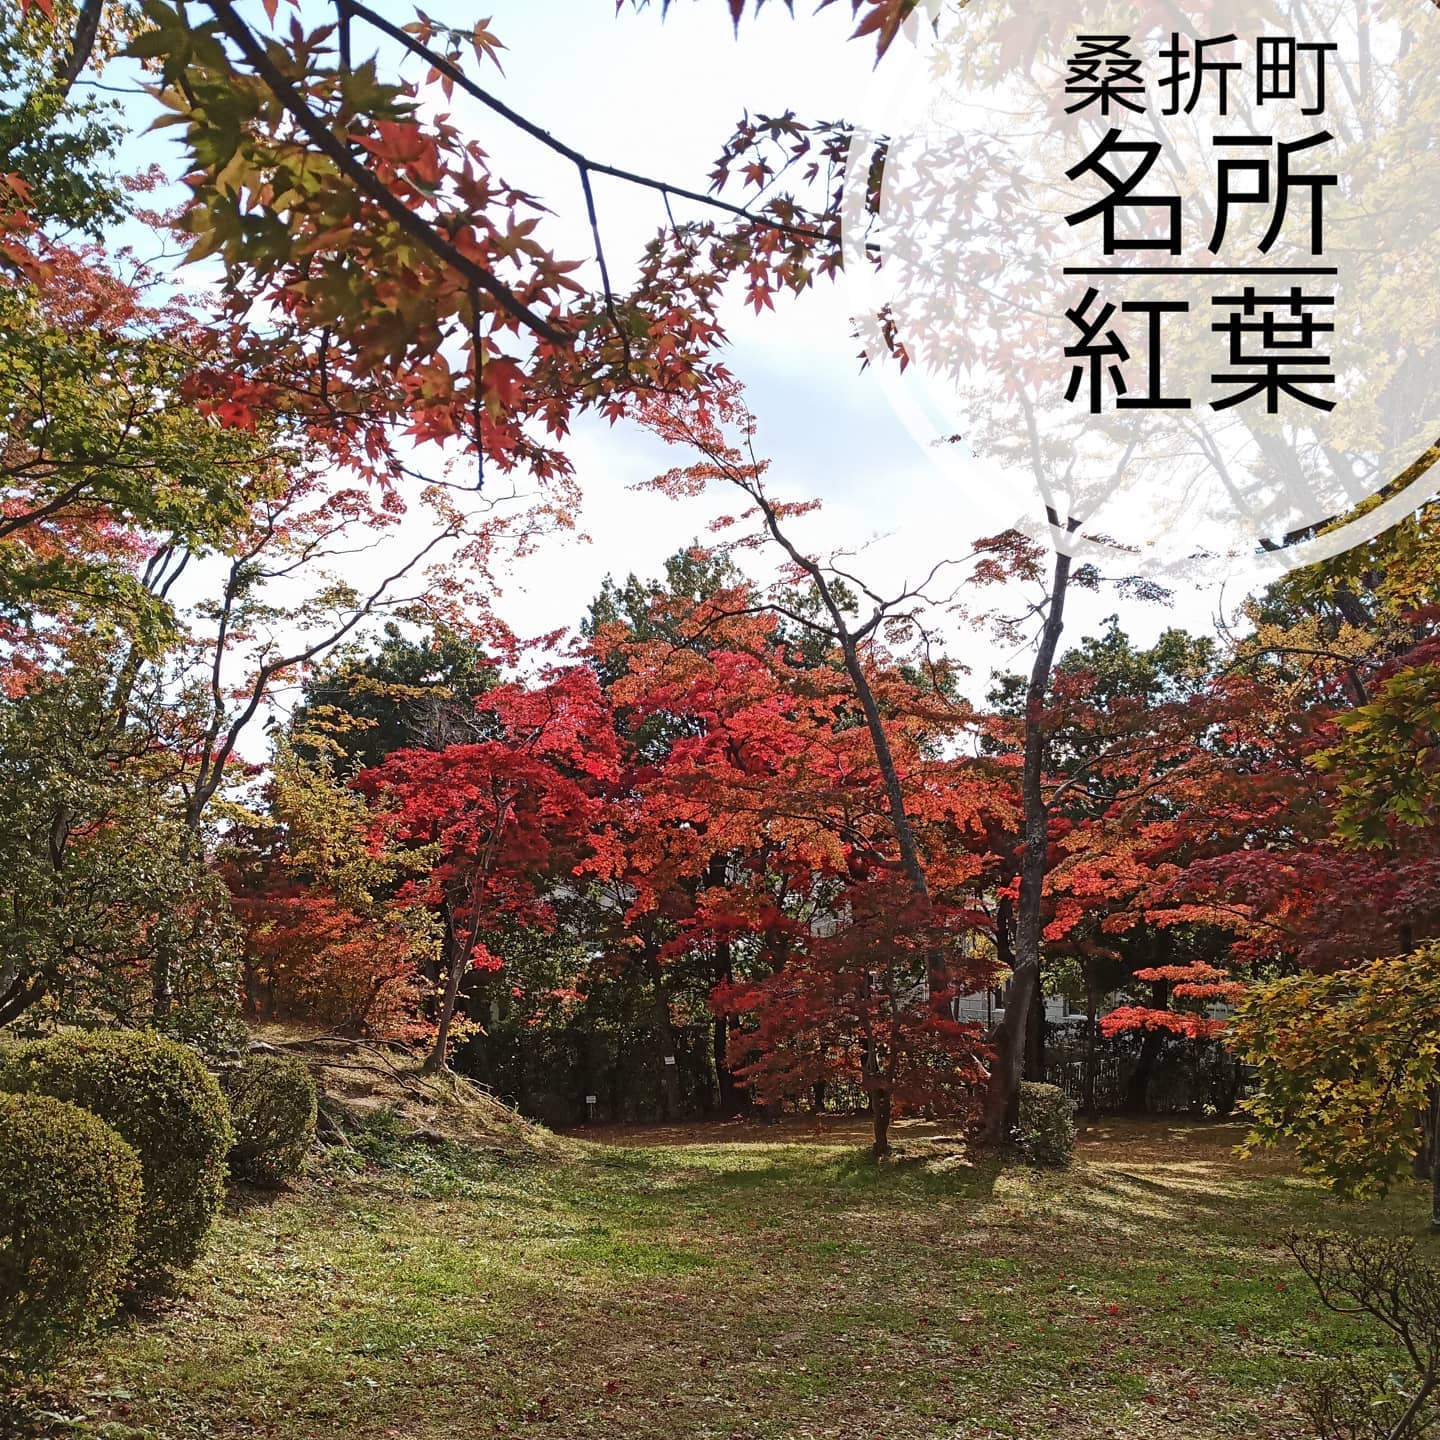 【絶景です】桑折町の名所の一つ。小さくて真っ赤な紅葉です。京都から運ばれて来た紅葉とのこと。良い天気、気分がいいなぁ。